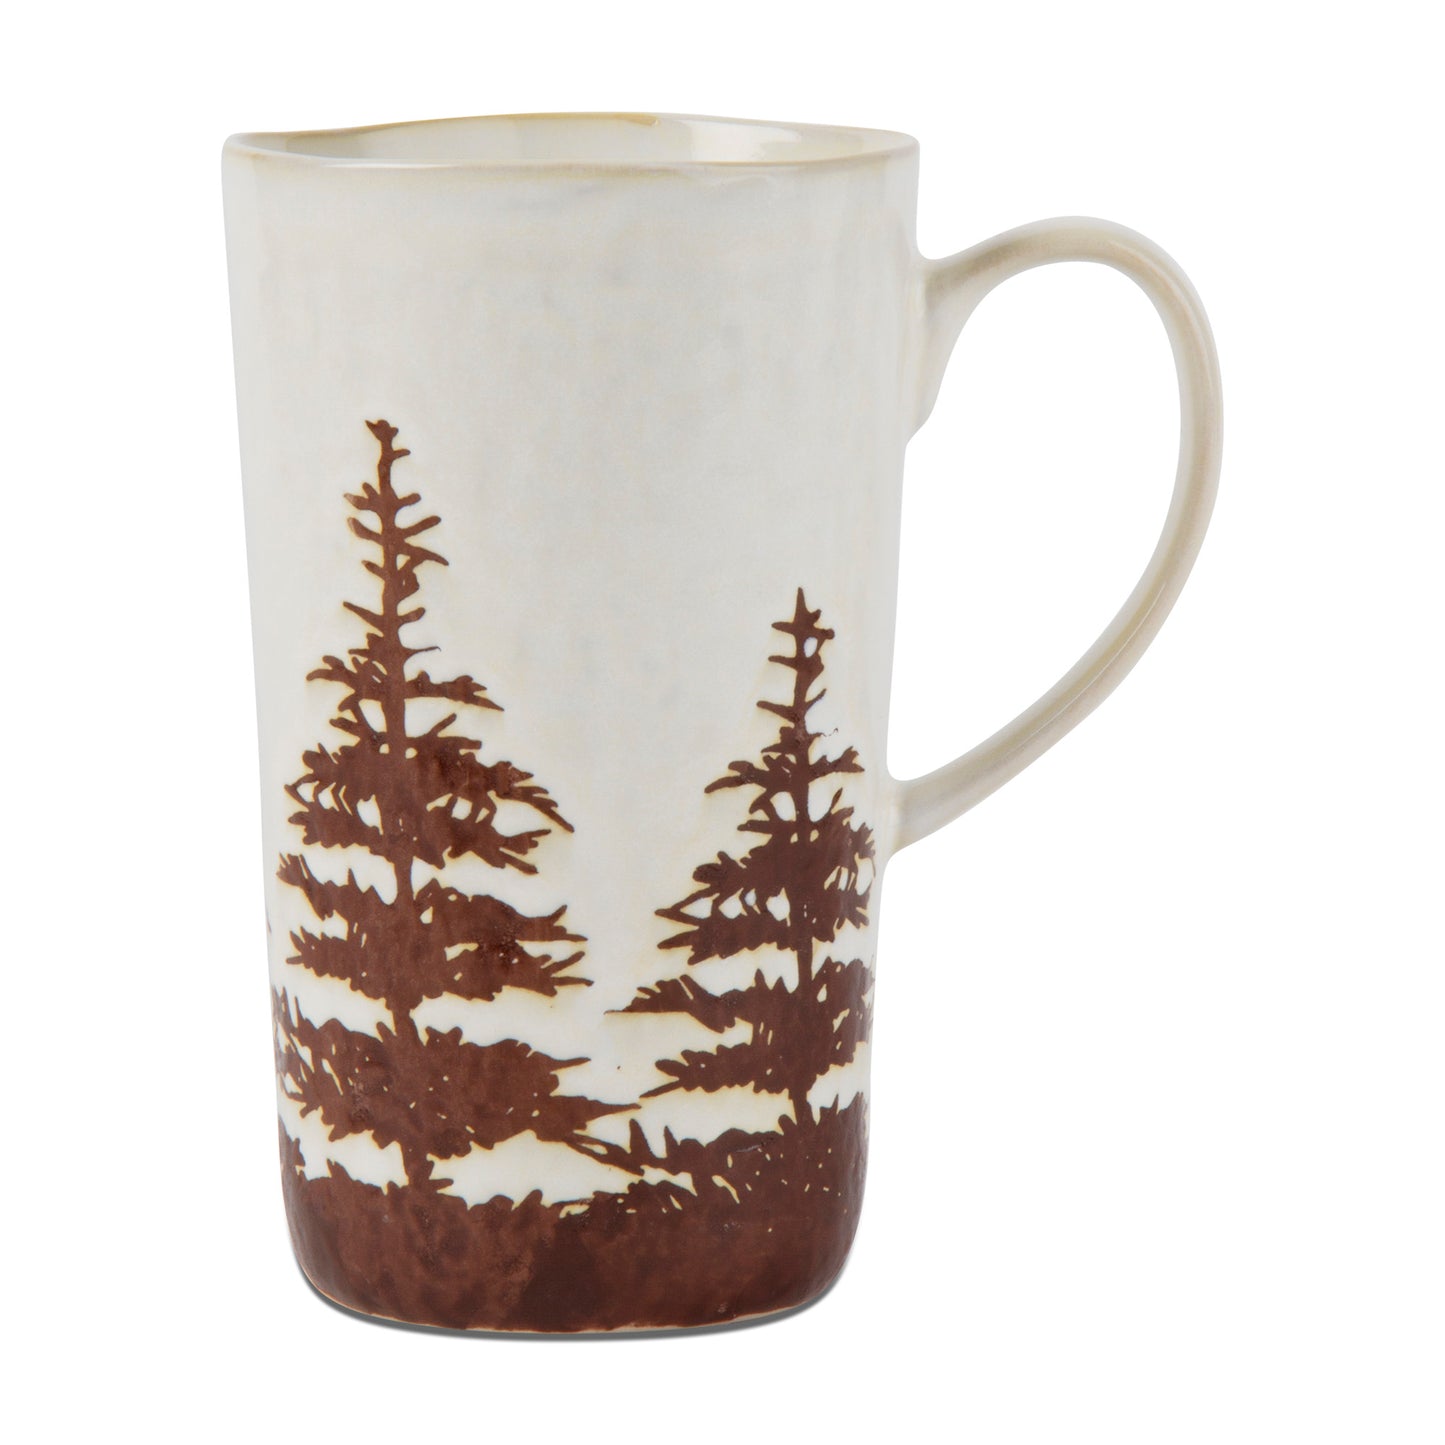 Mug Barn tall pine mug